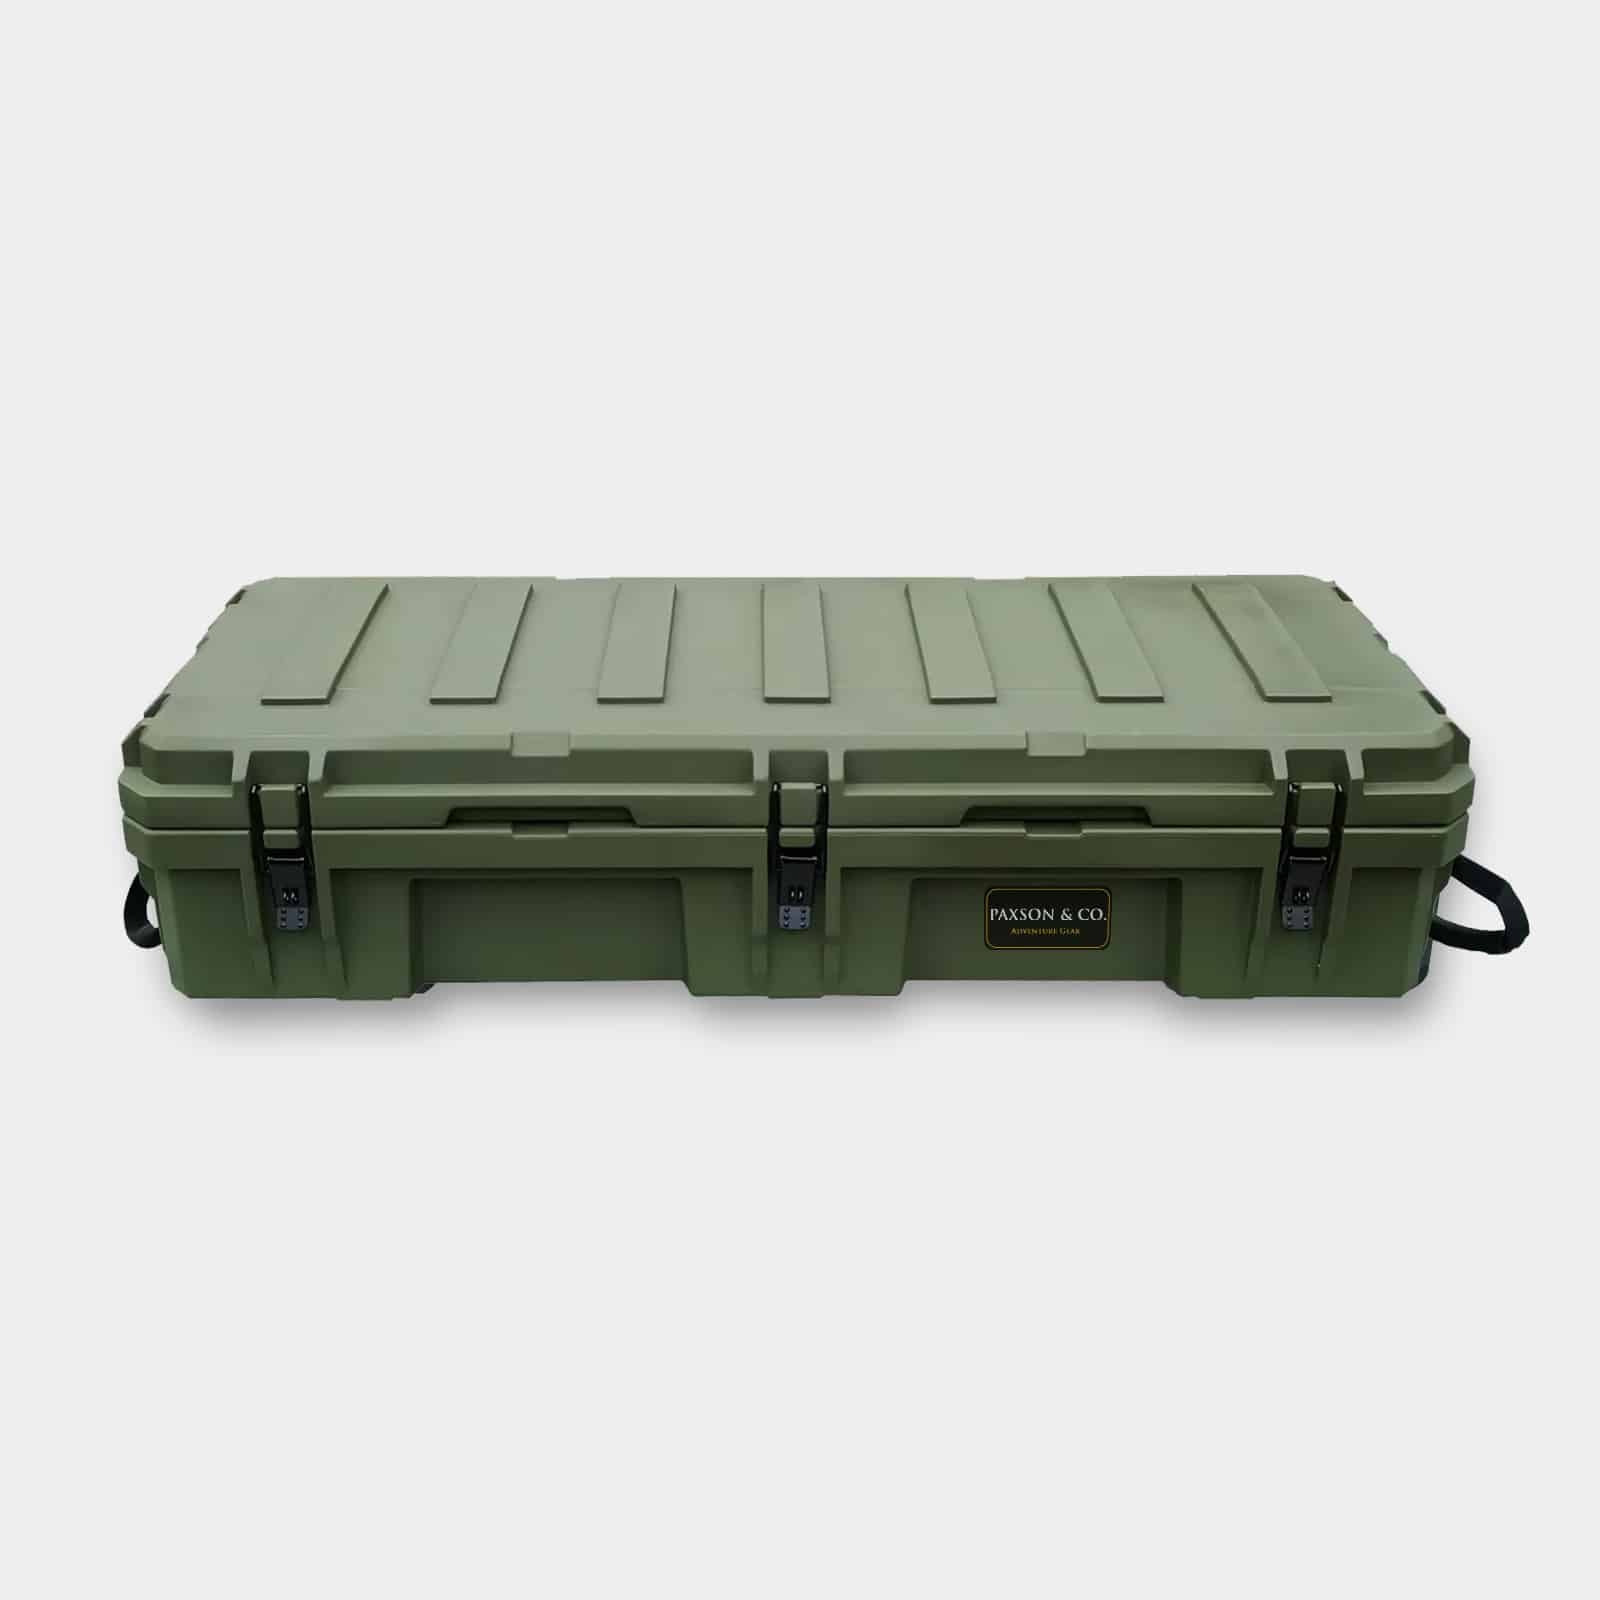 Offroad Camping Box 95L - green - 120cm - PAXSON & CO. - Adventure Gear